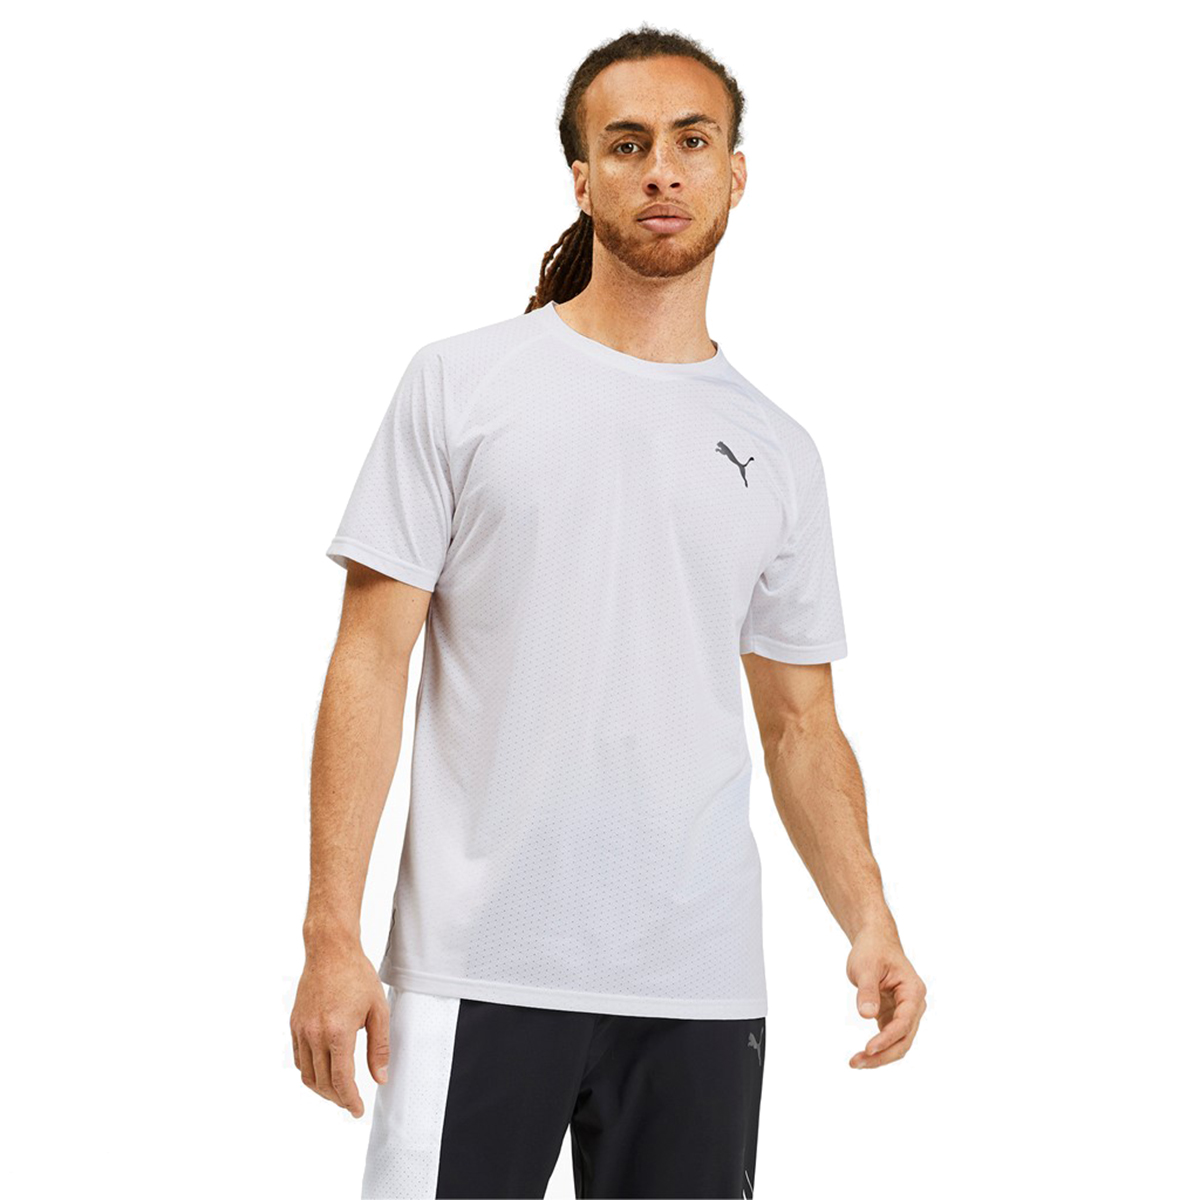 PUMA SS Tech Tee Herren T-shirt Sportswear 518389 03 weiss